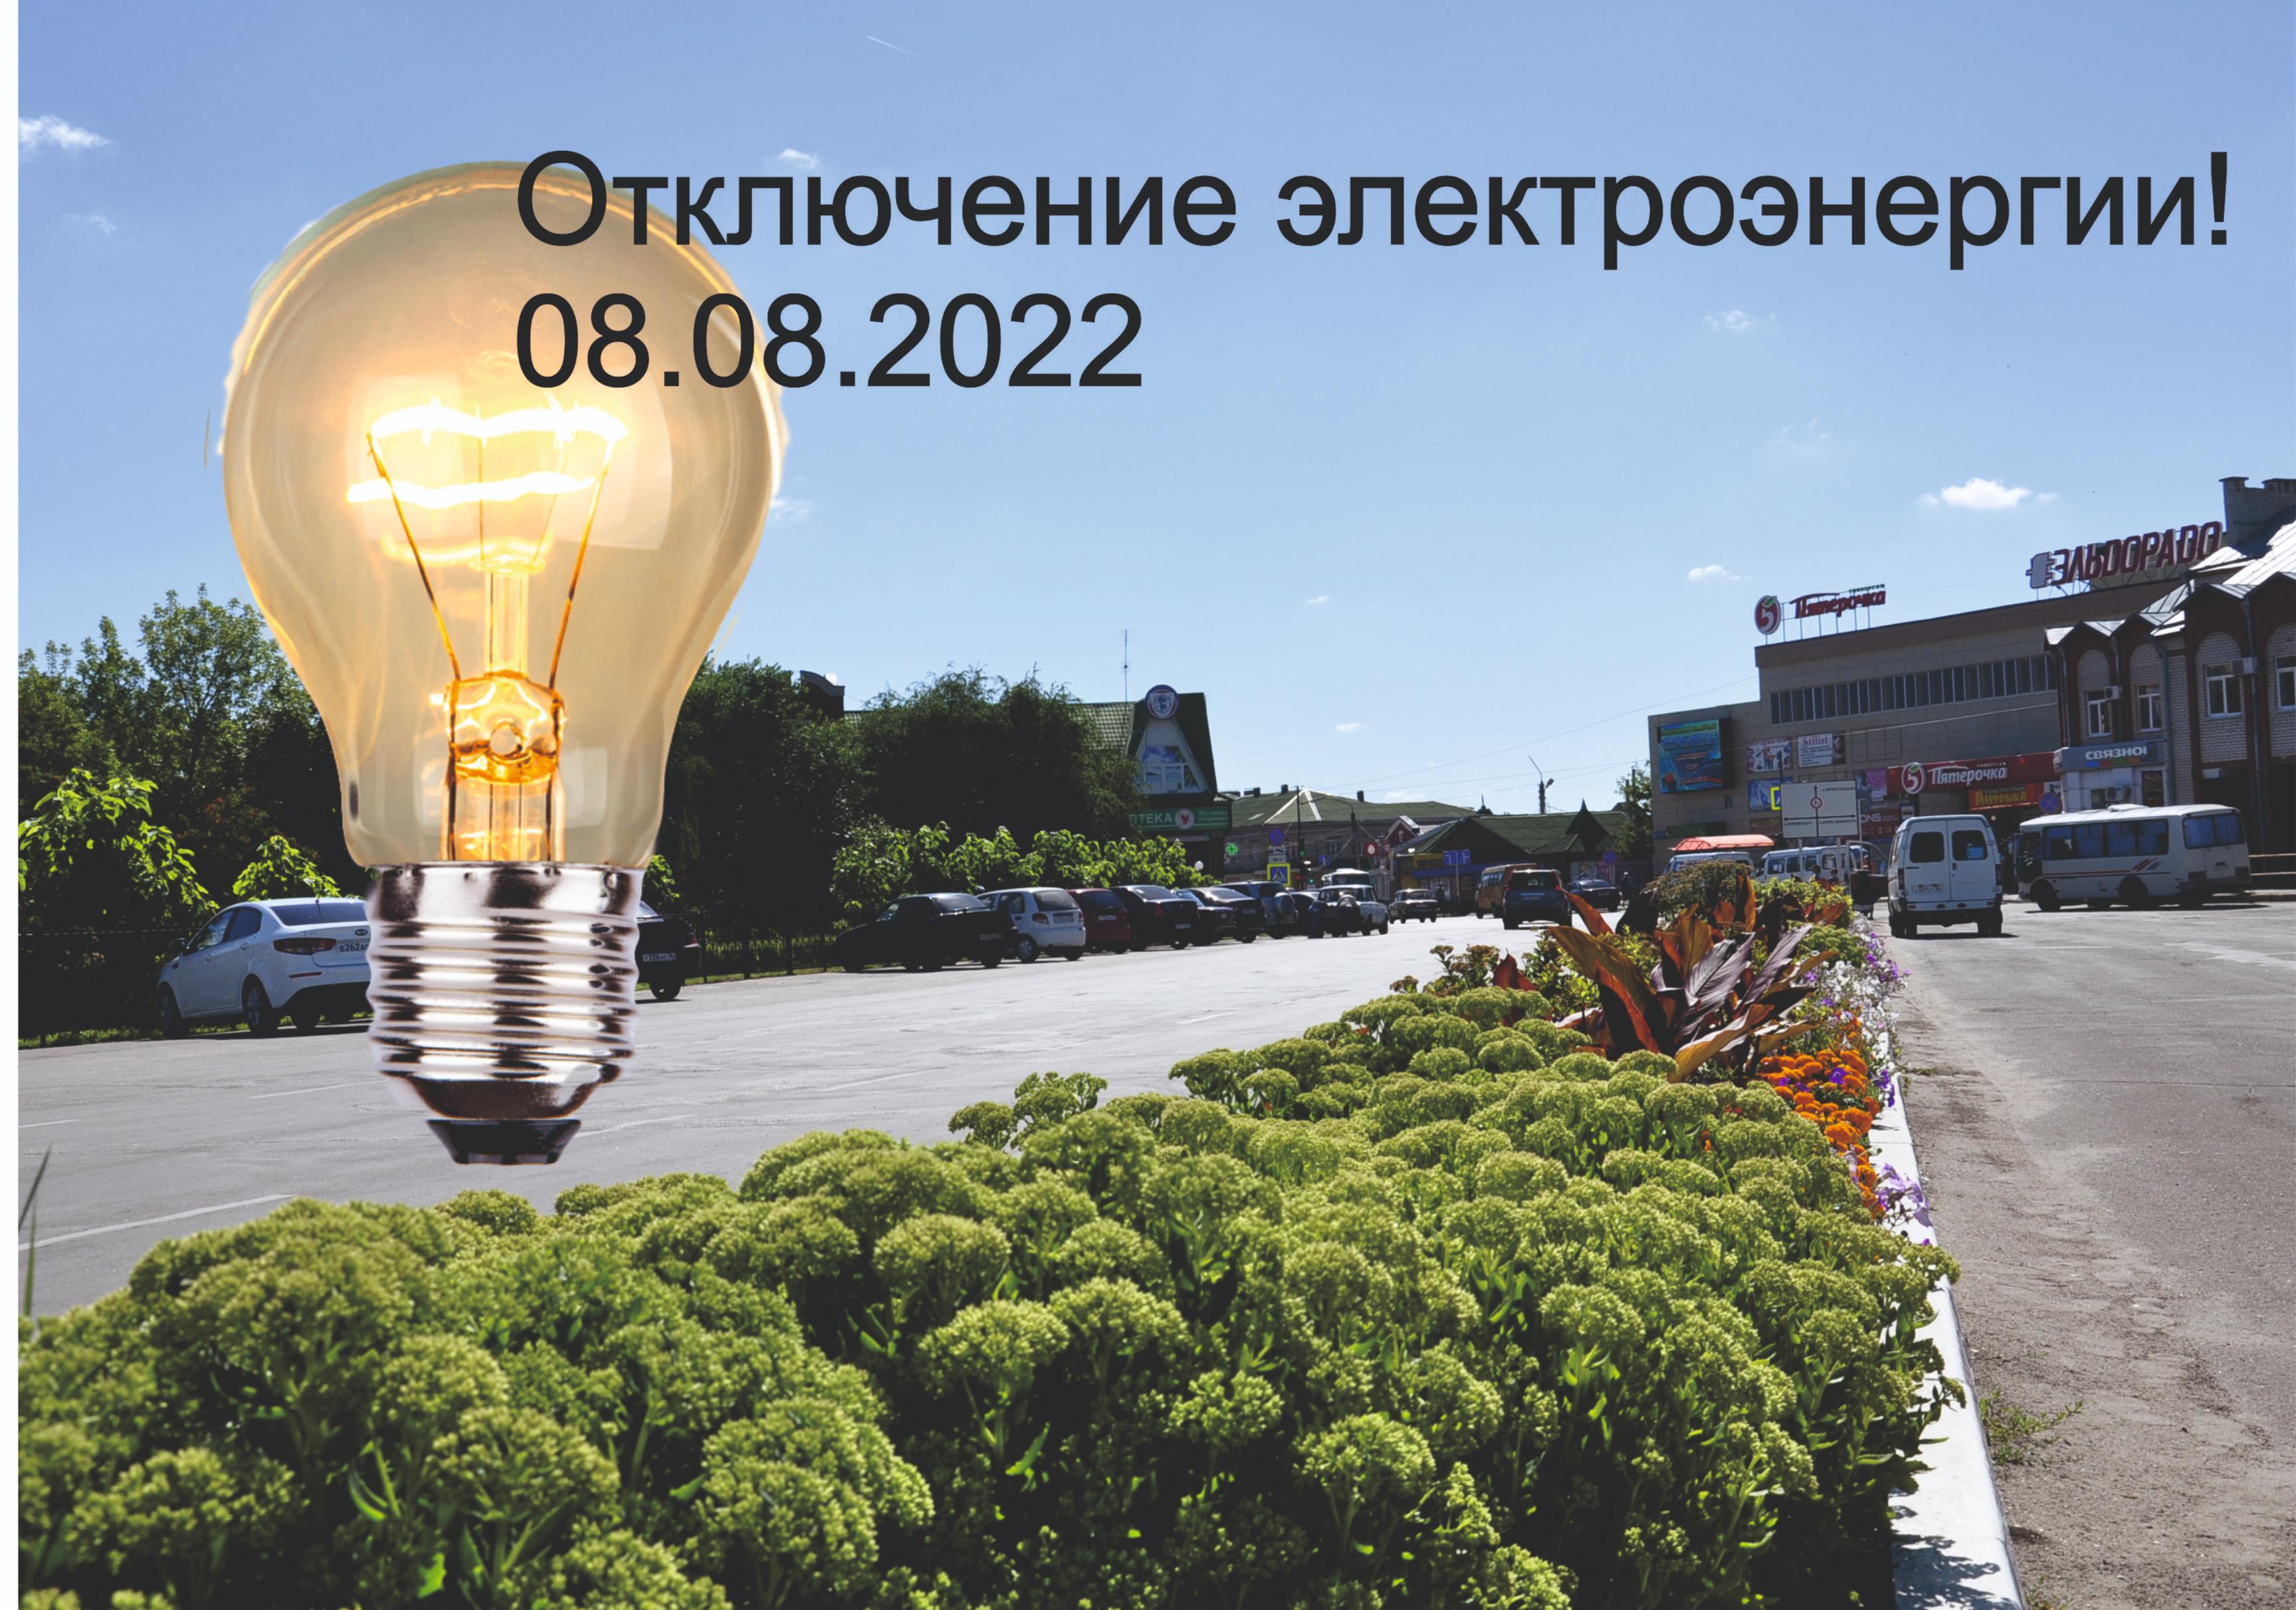 Администрация МУП г.Россошь “Городские электрические сети доводит до сведения заинтересованных лиц,что будет прекращена подача электроэнергии 8.08.2022г.